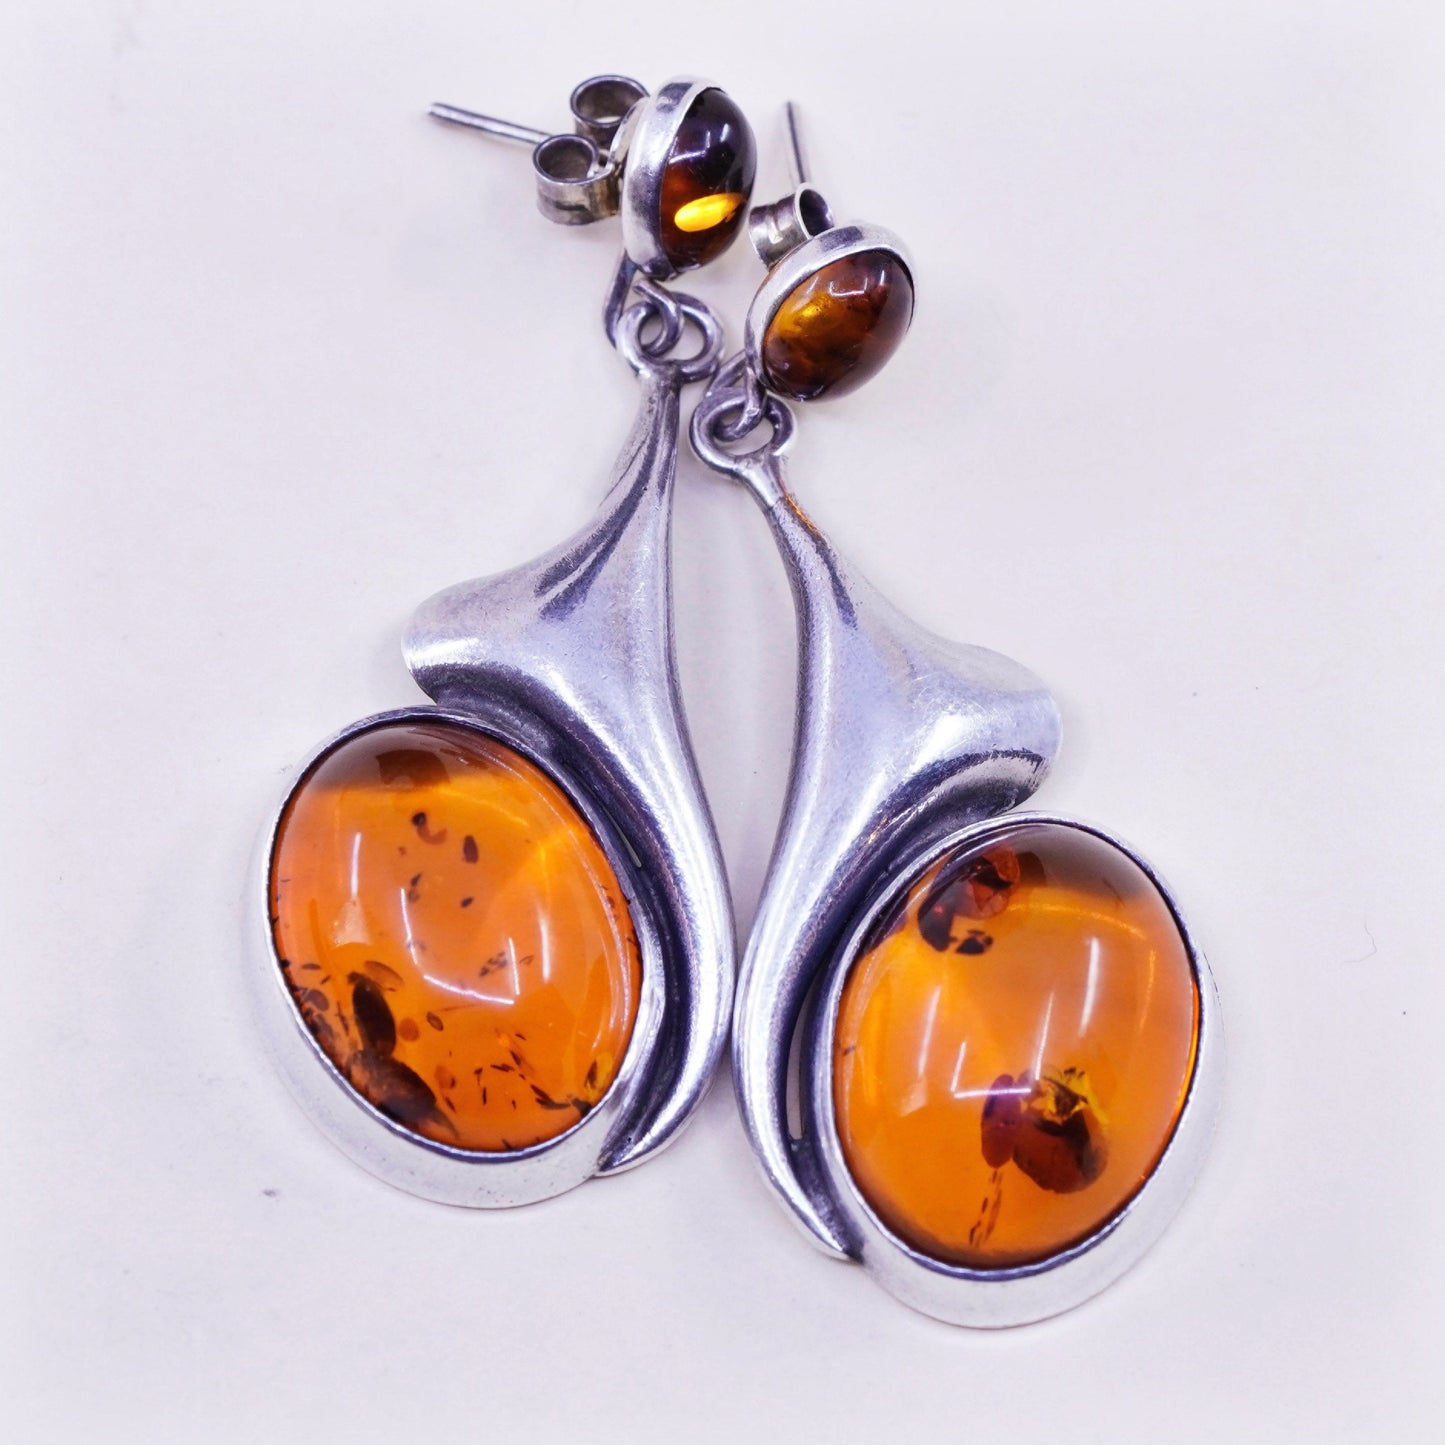 Vintage Sterling silver handmade earrings, 925 teardrop dangles with amber